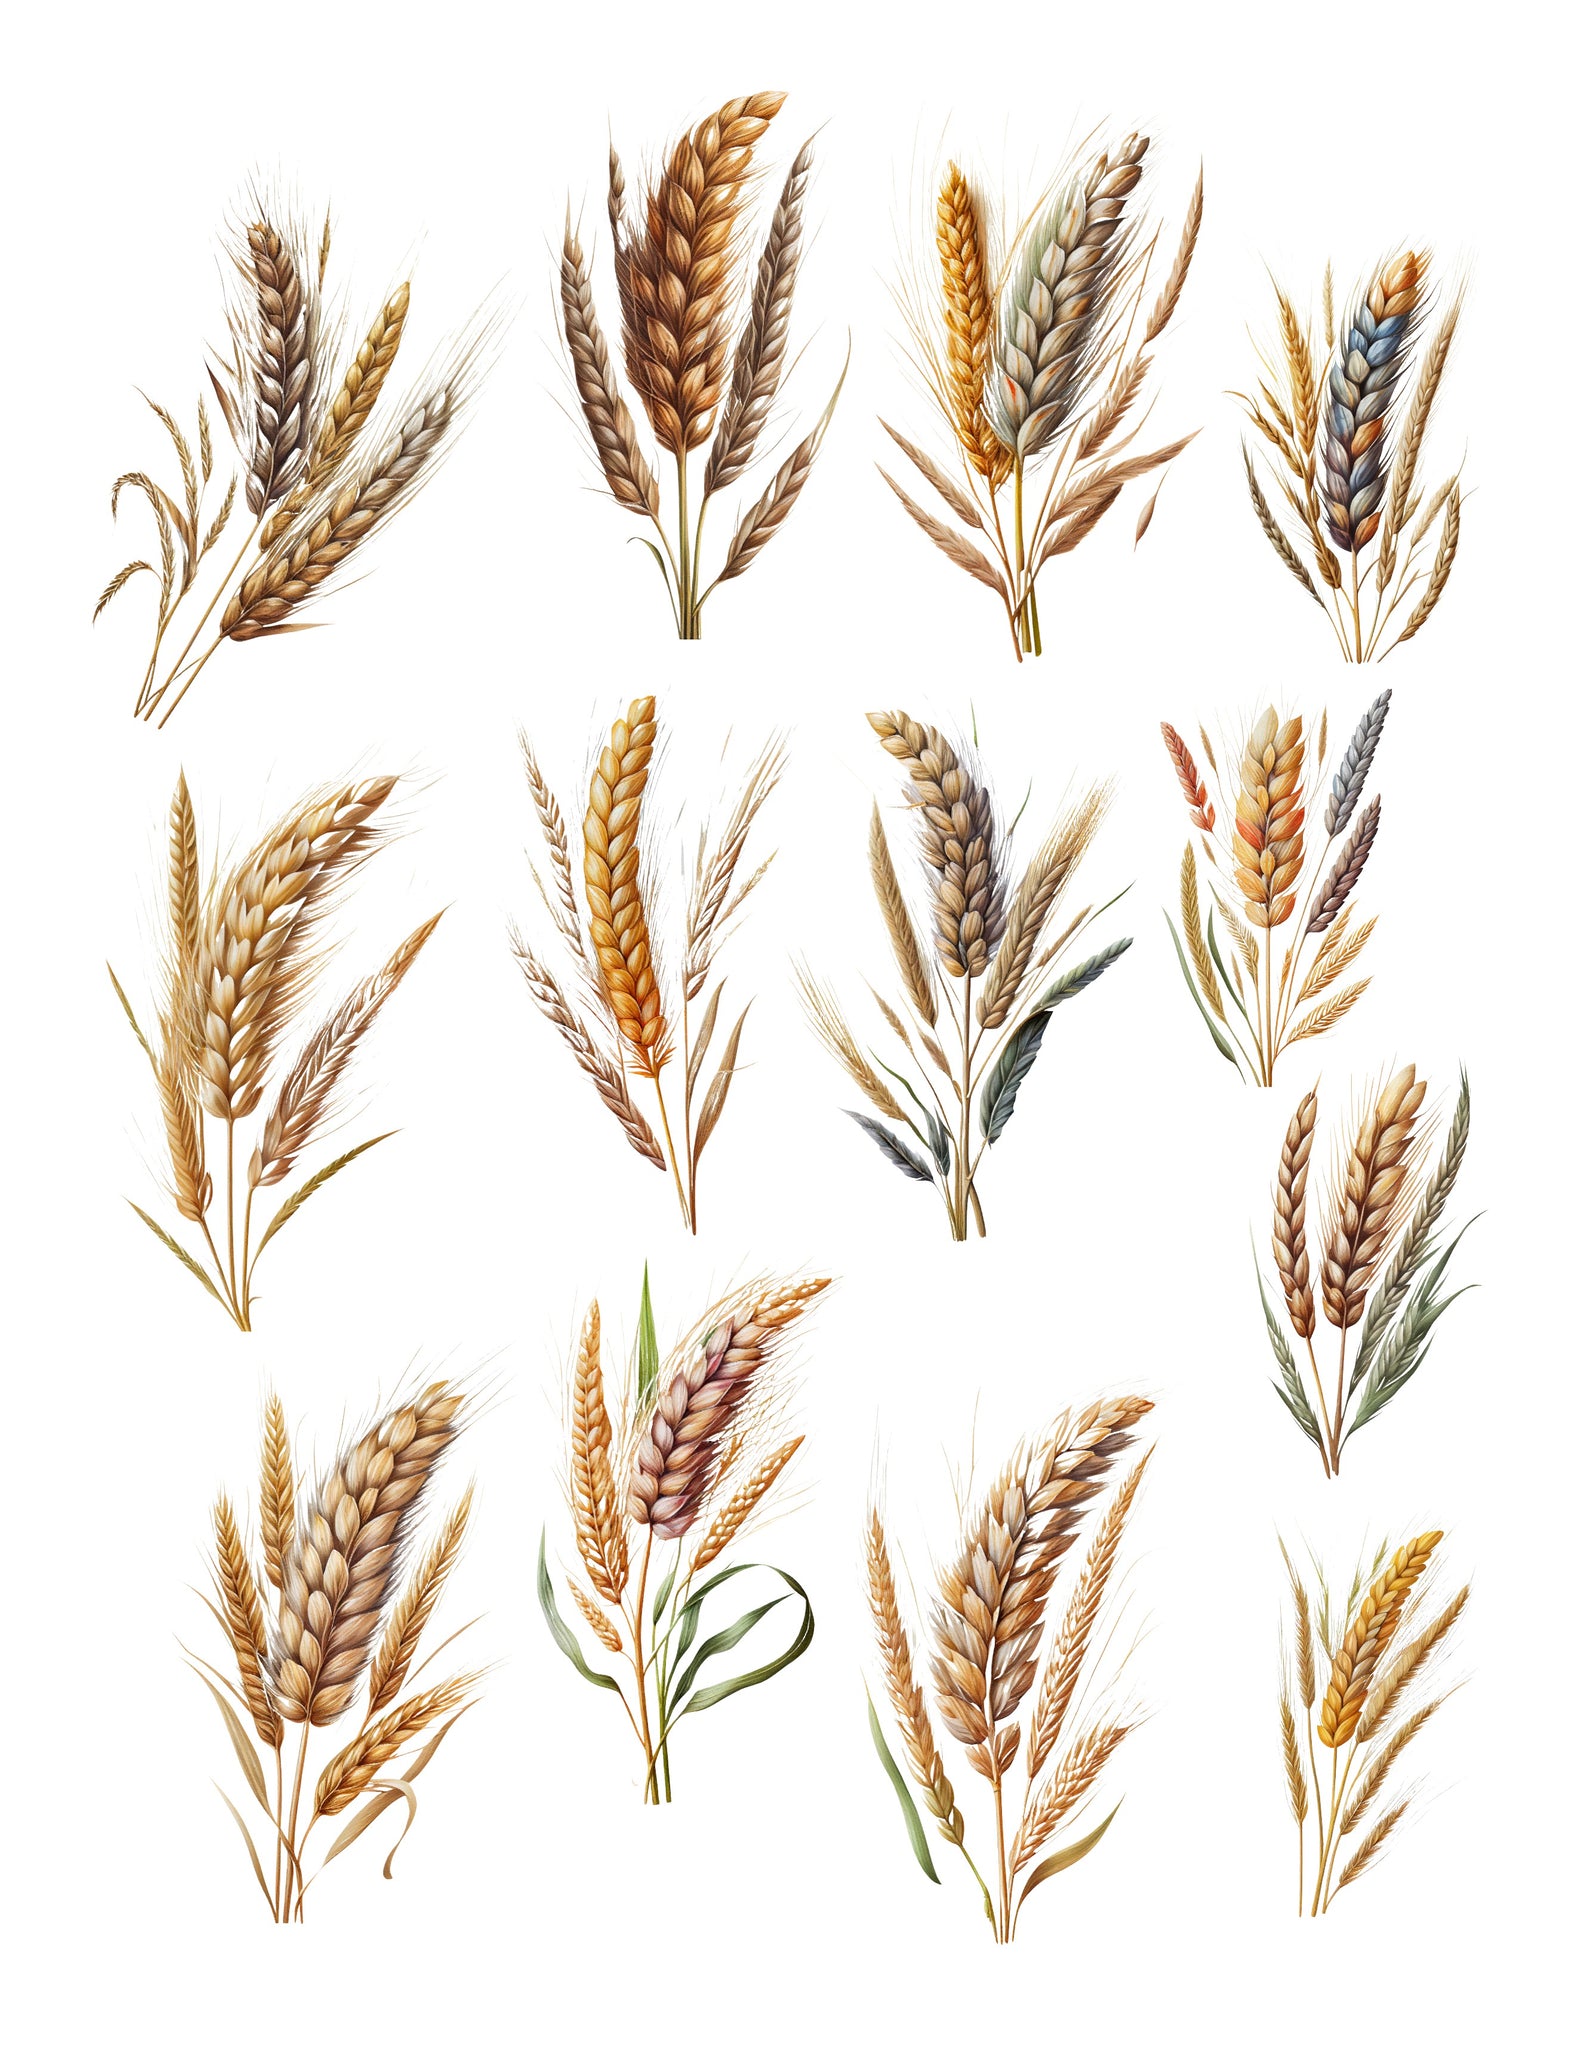 Field of Gold Wheat Ephemera